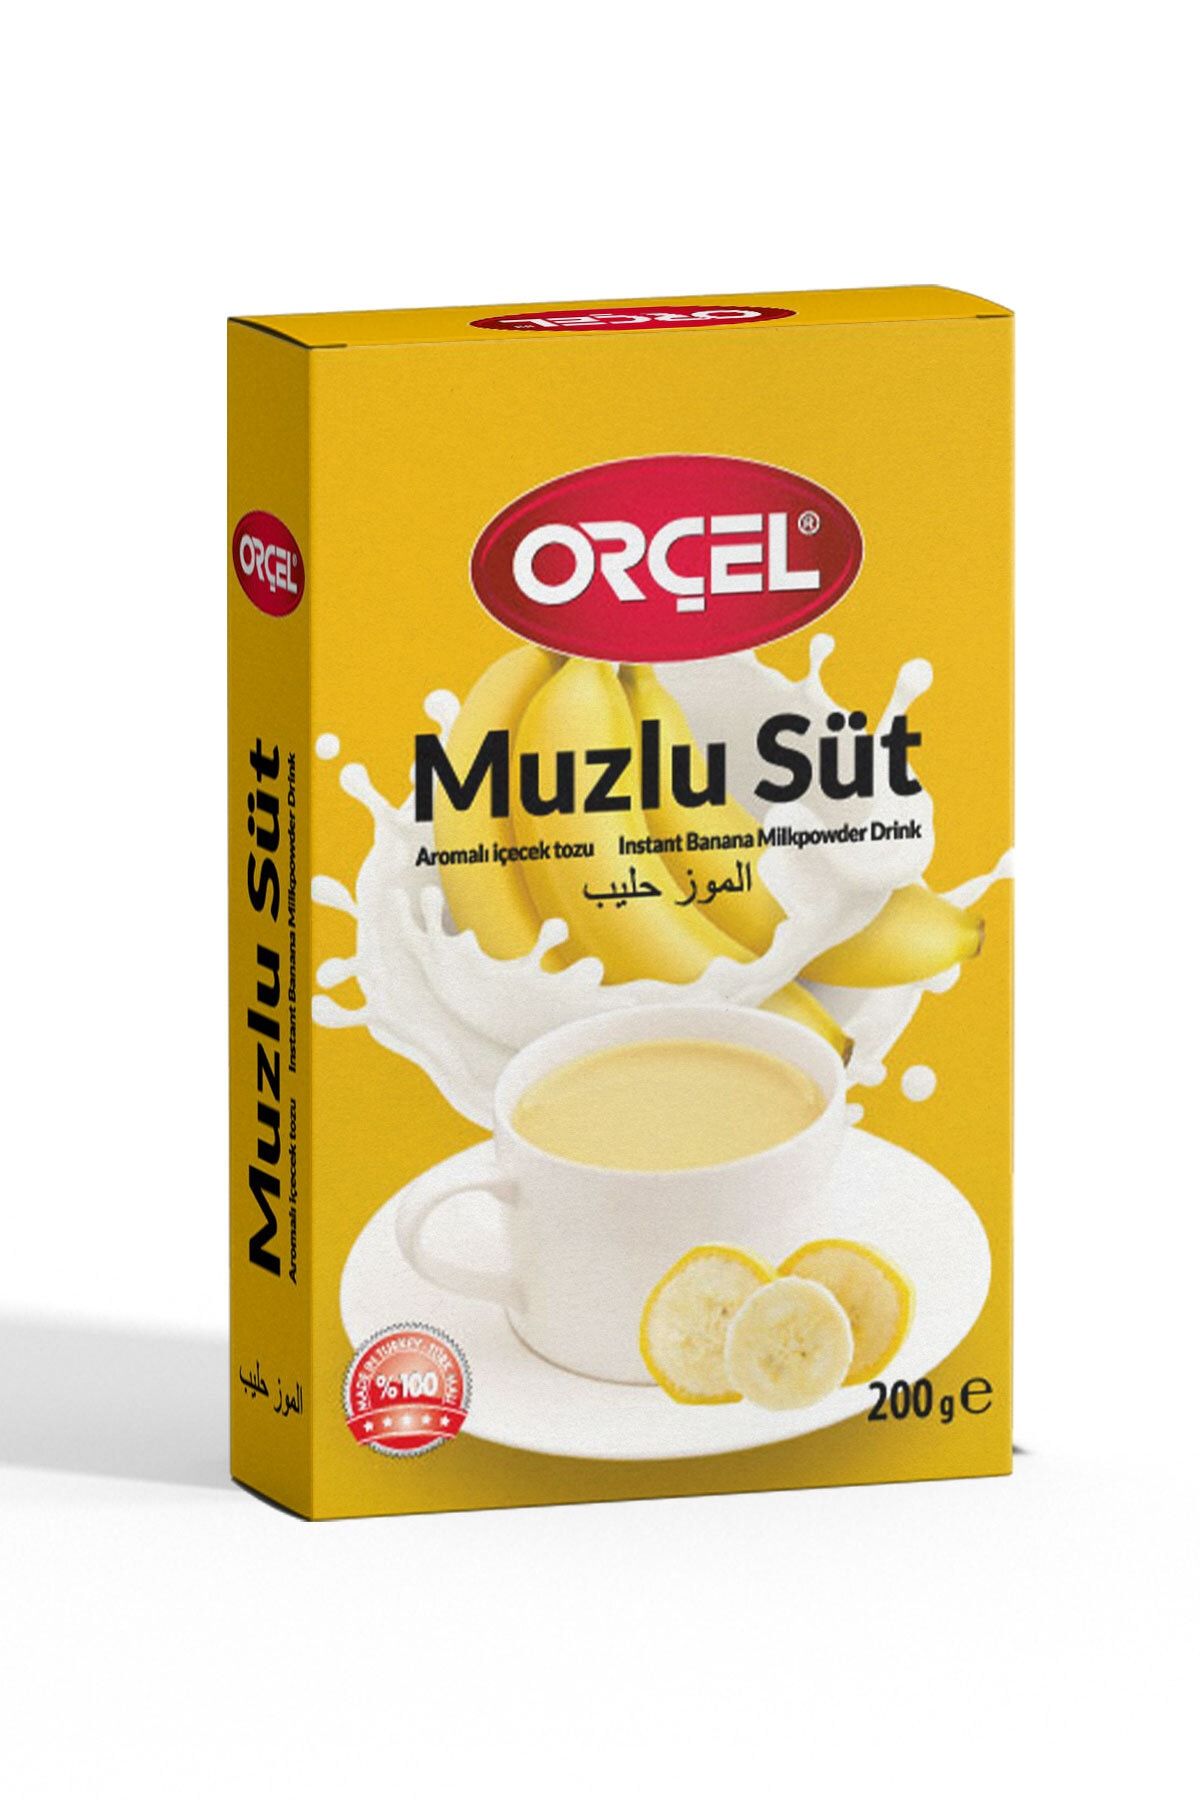 ORÇEL Muzlu Süt Aromalı Içecek Tozu Oralet Çay 200 Gr.